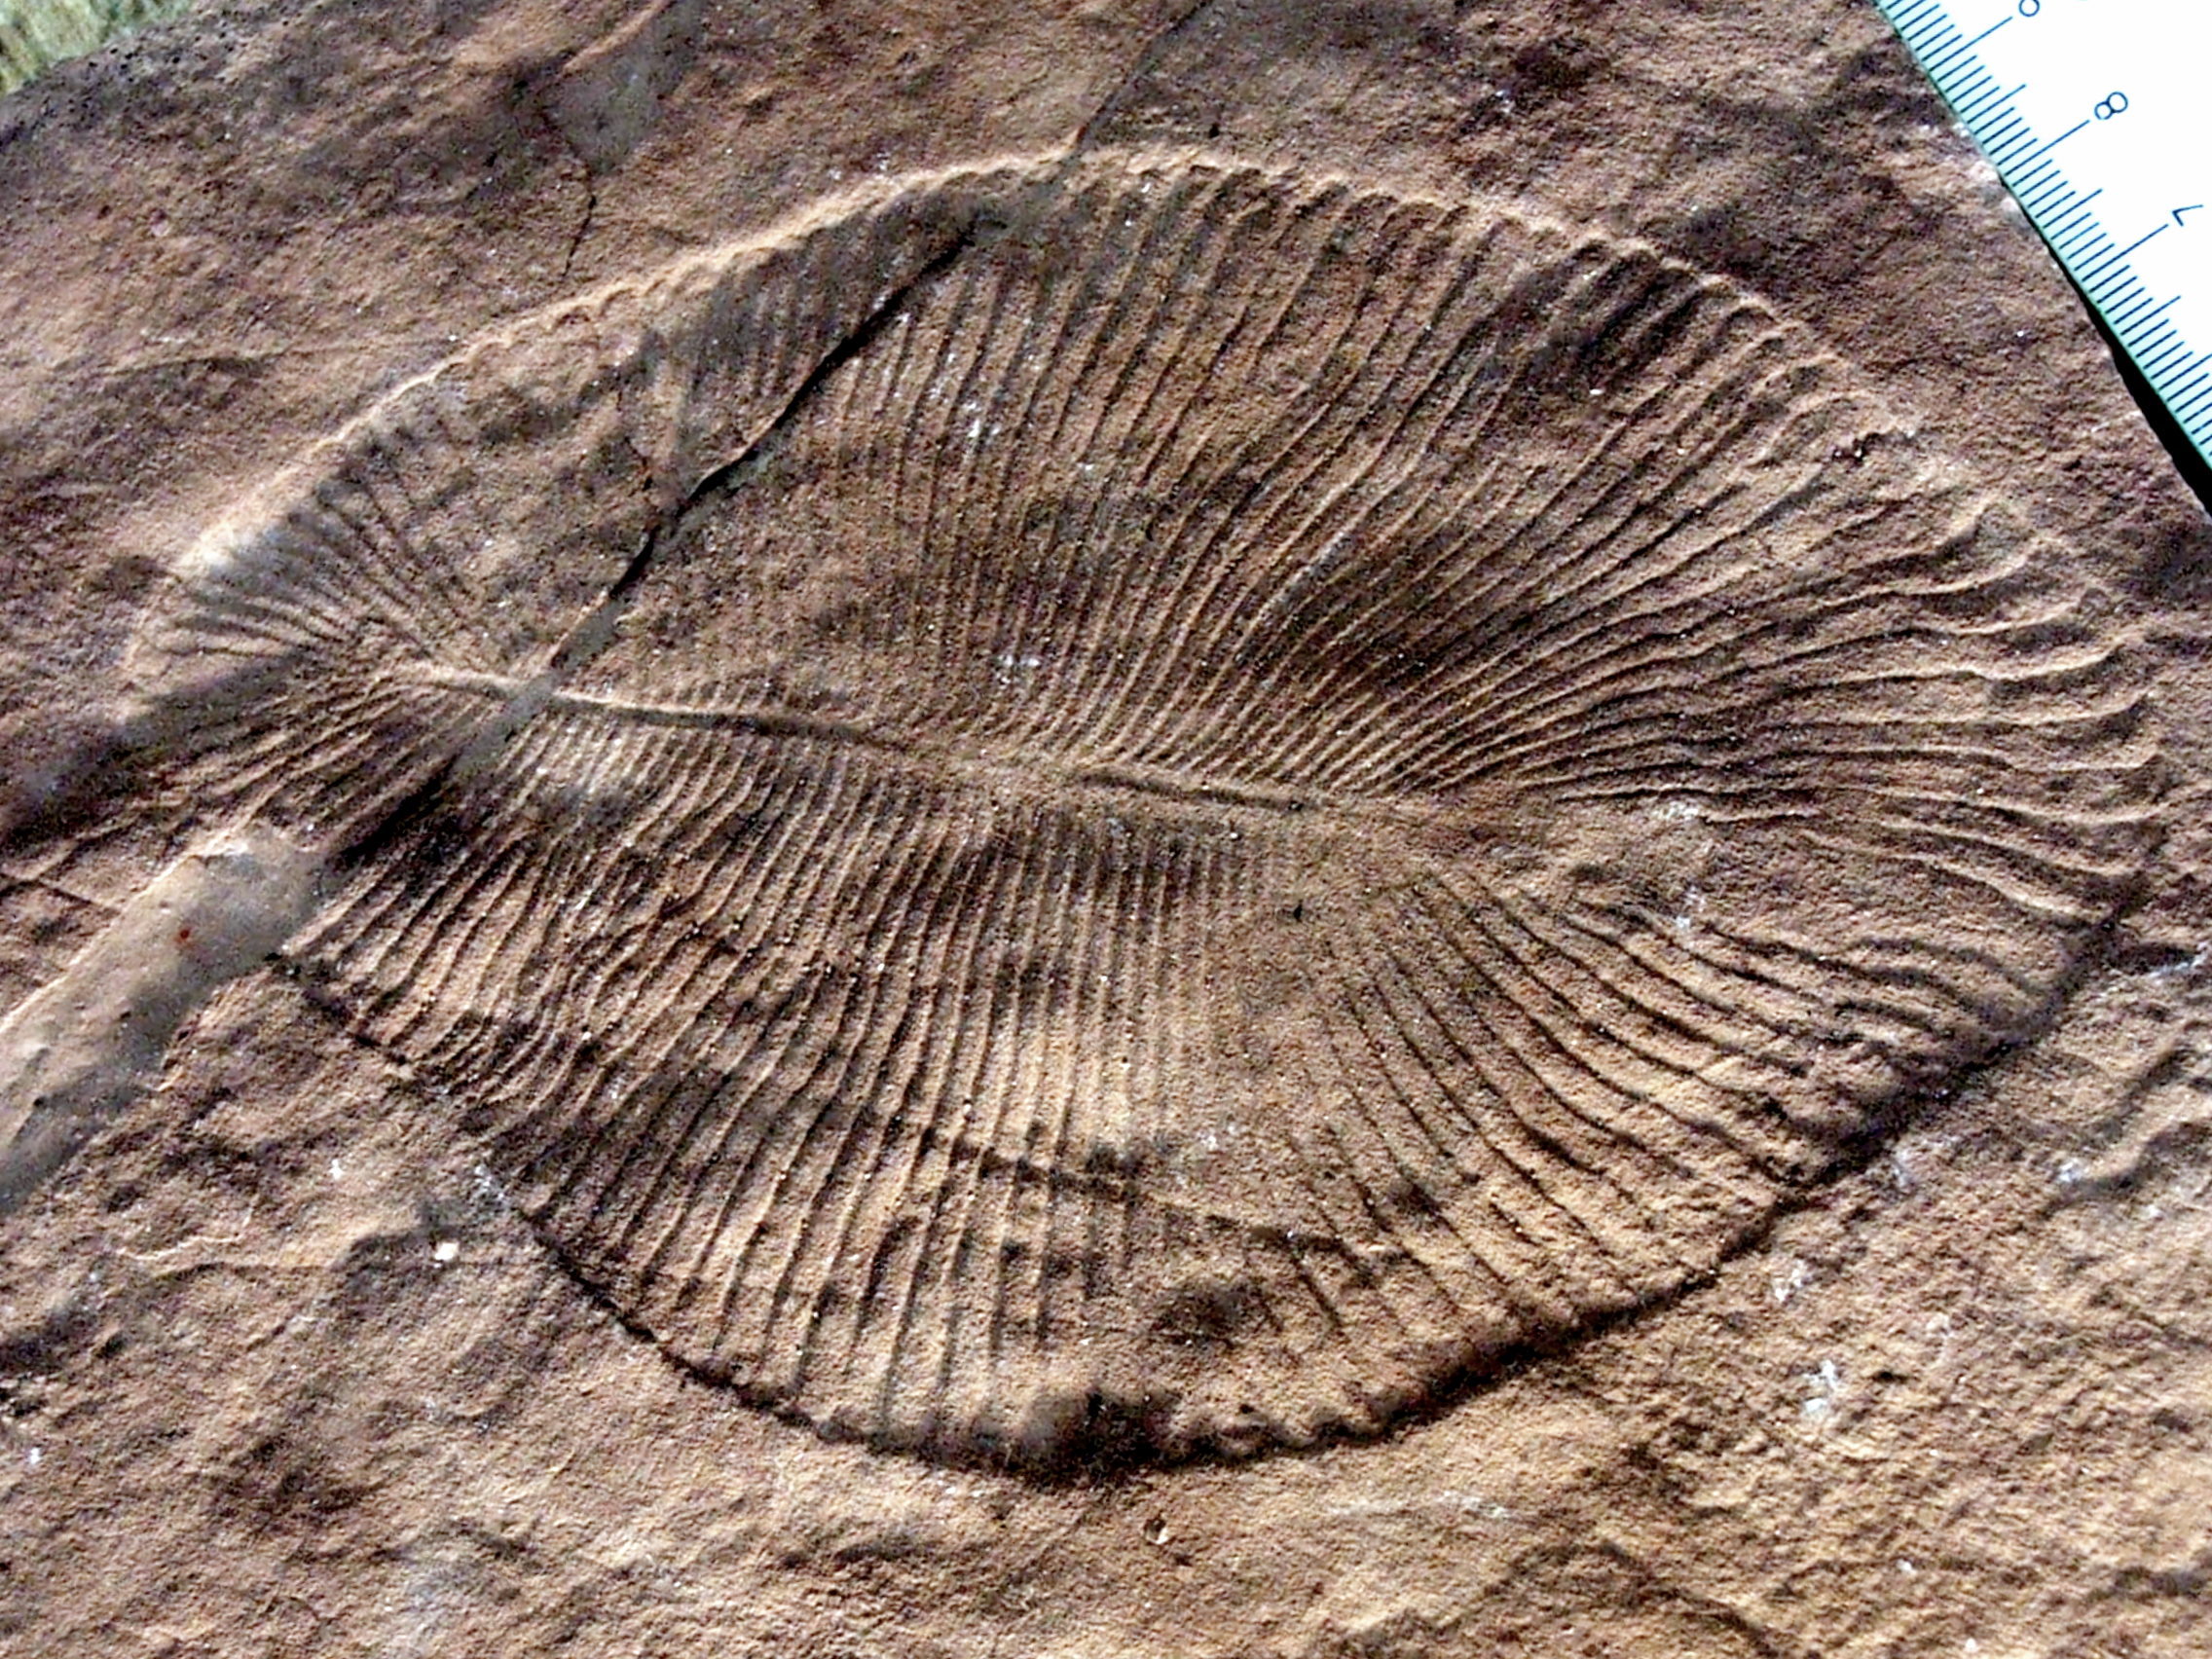 5亿年前埃迪卡拉纪刺胞动物化石揭示水母科演化历史 - 化石网